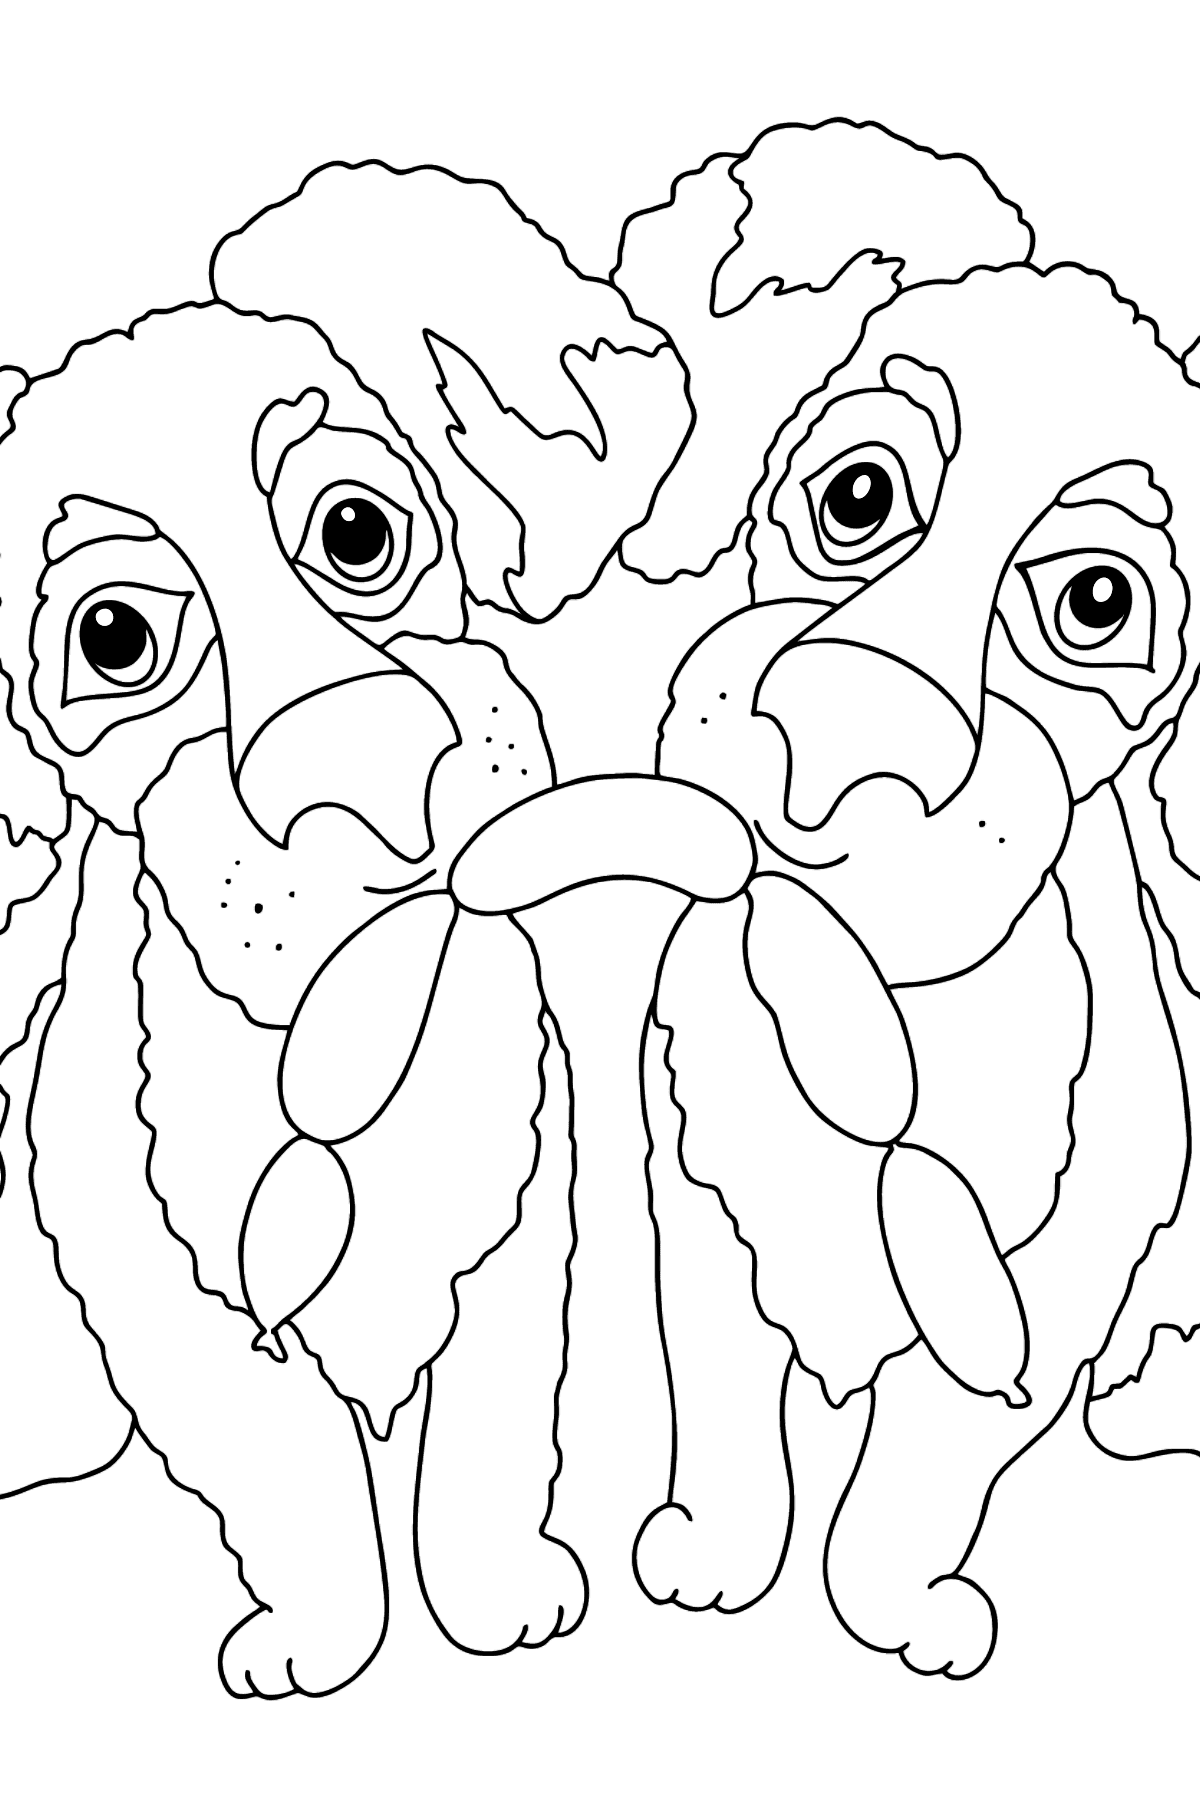 Desenho de cães engraçados para colorir (difícil) - Imagens para Colorir para Crianças